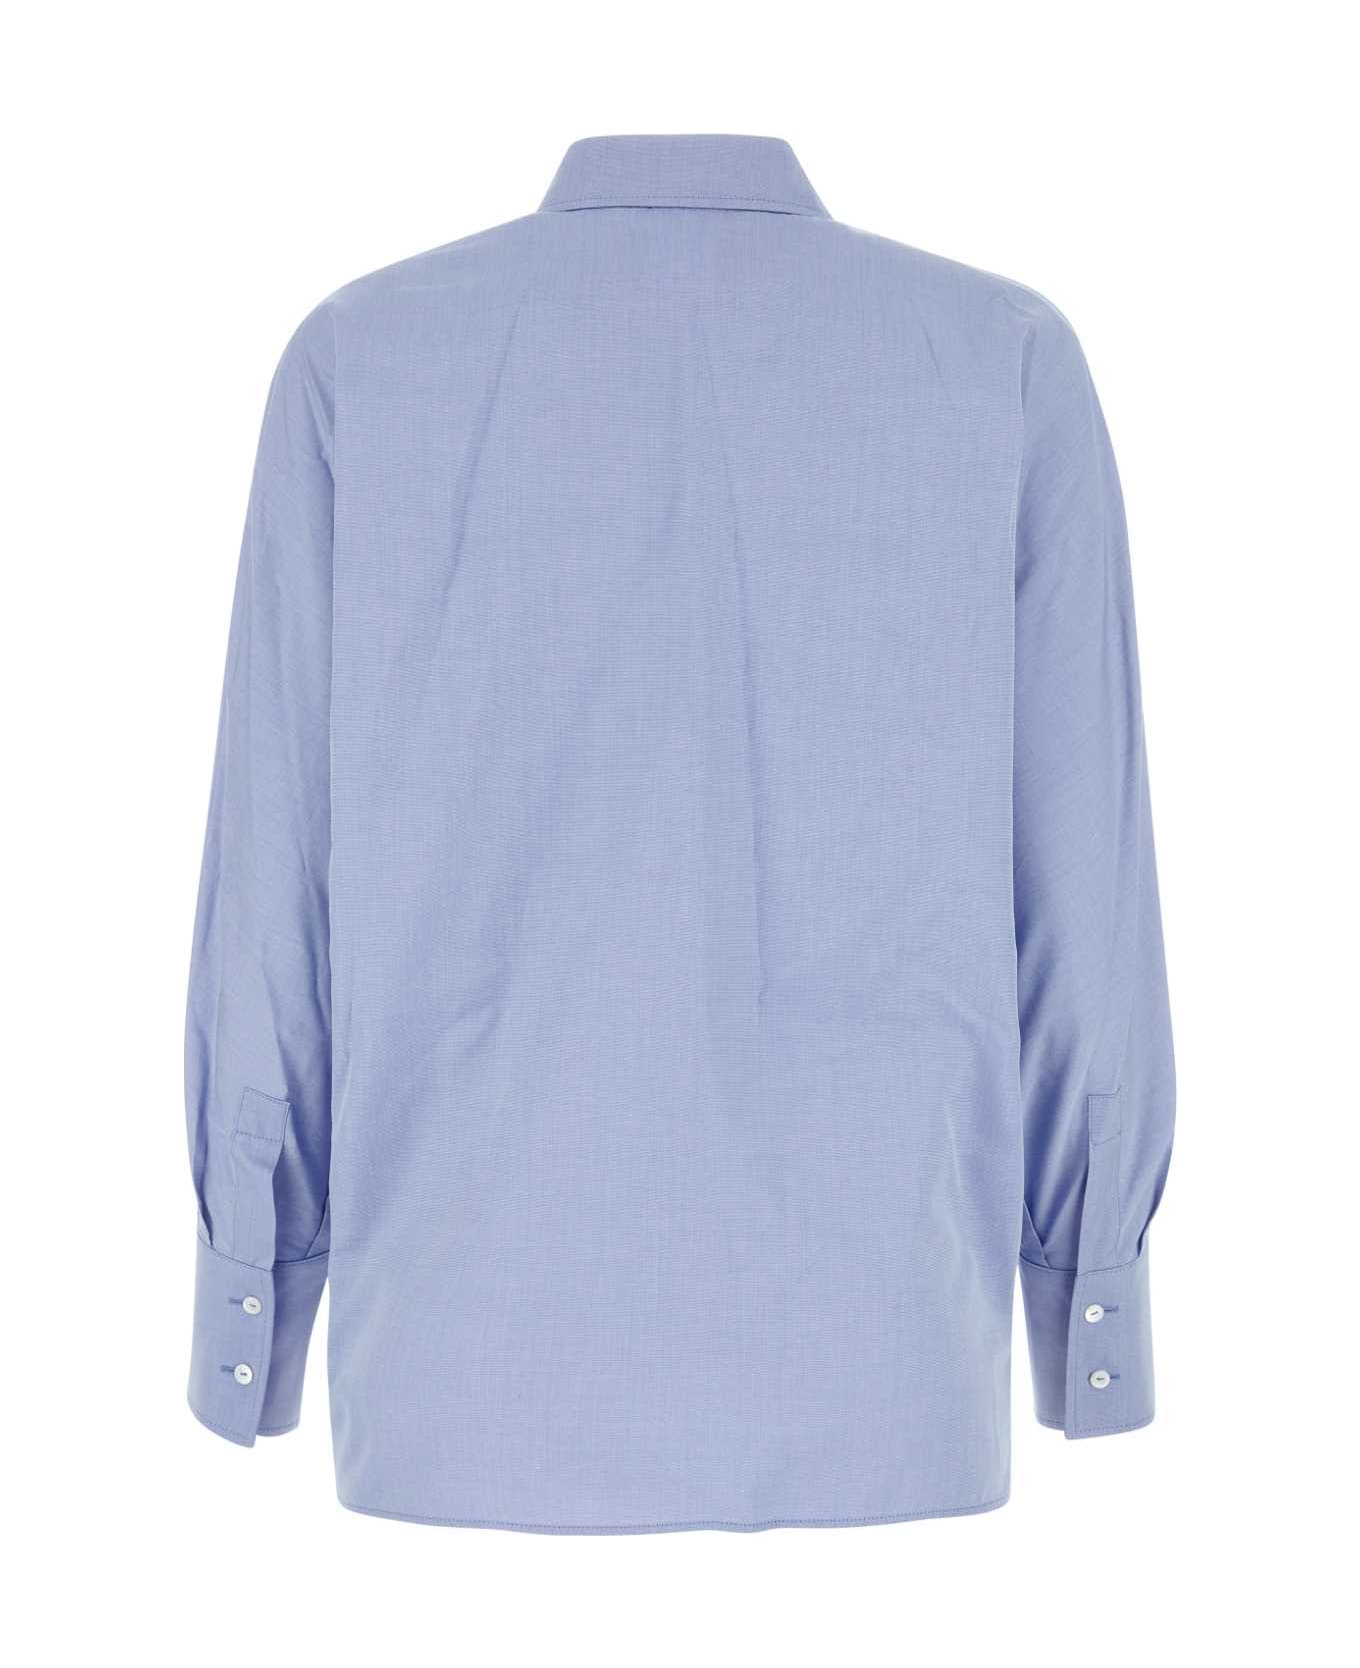 Max Mara Studio Light-blue Cotton Garenna Shirt - AZZURRO